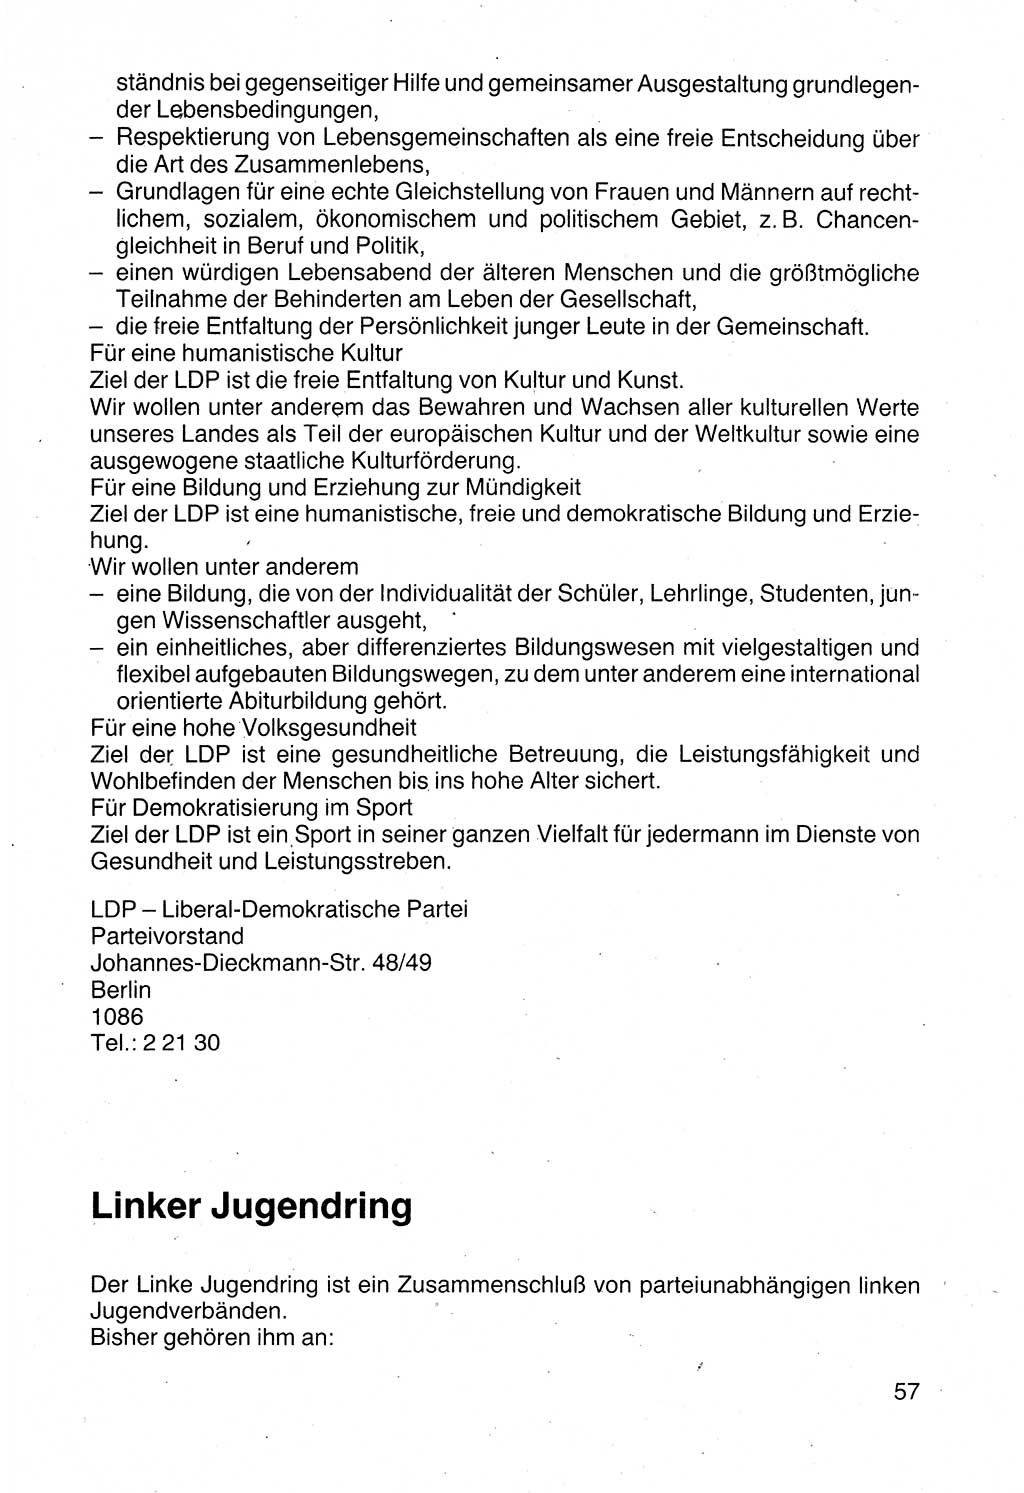 Politische Parteien und Bewegungen der DDR (Deutsche Demokratische Republik) über sich selbst 1990, Seite 57 (Pol. Part. Bew. DDR 1990, S. 57)